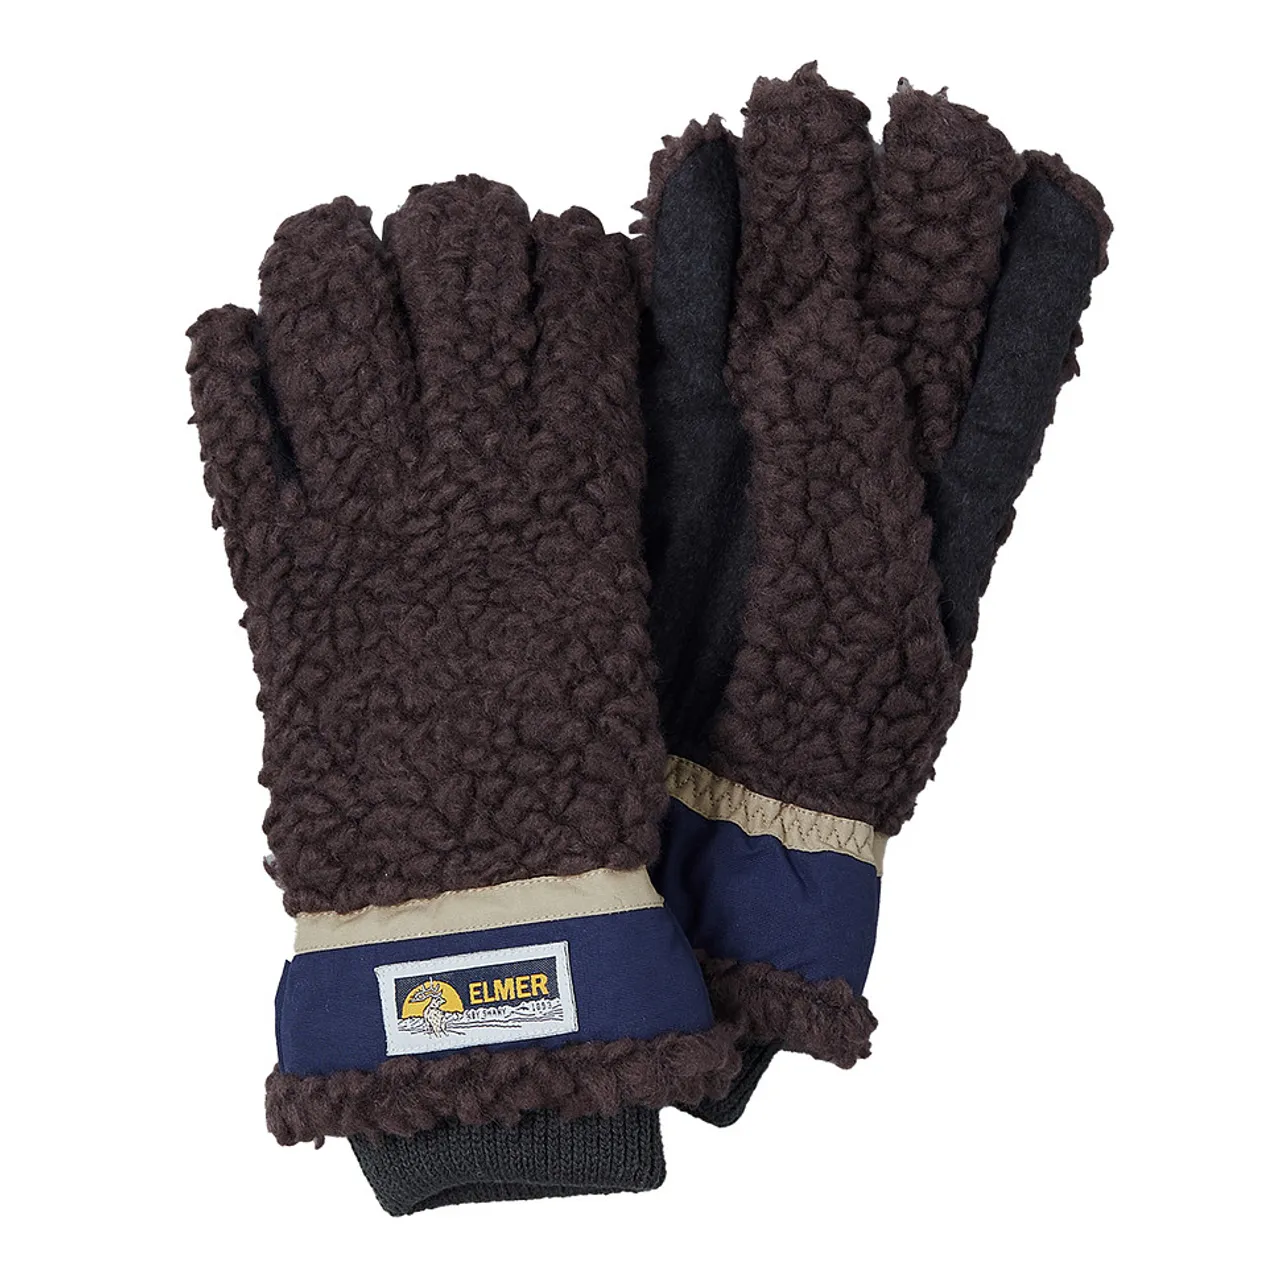 EM353 vergleichen - Preise Elmer Gloves Gloves Teddy 5